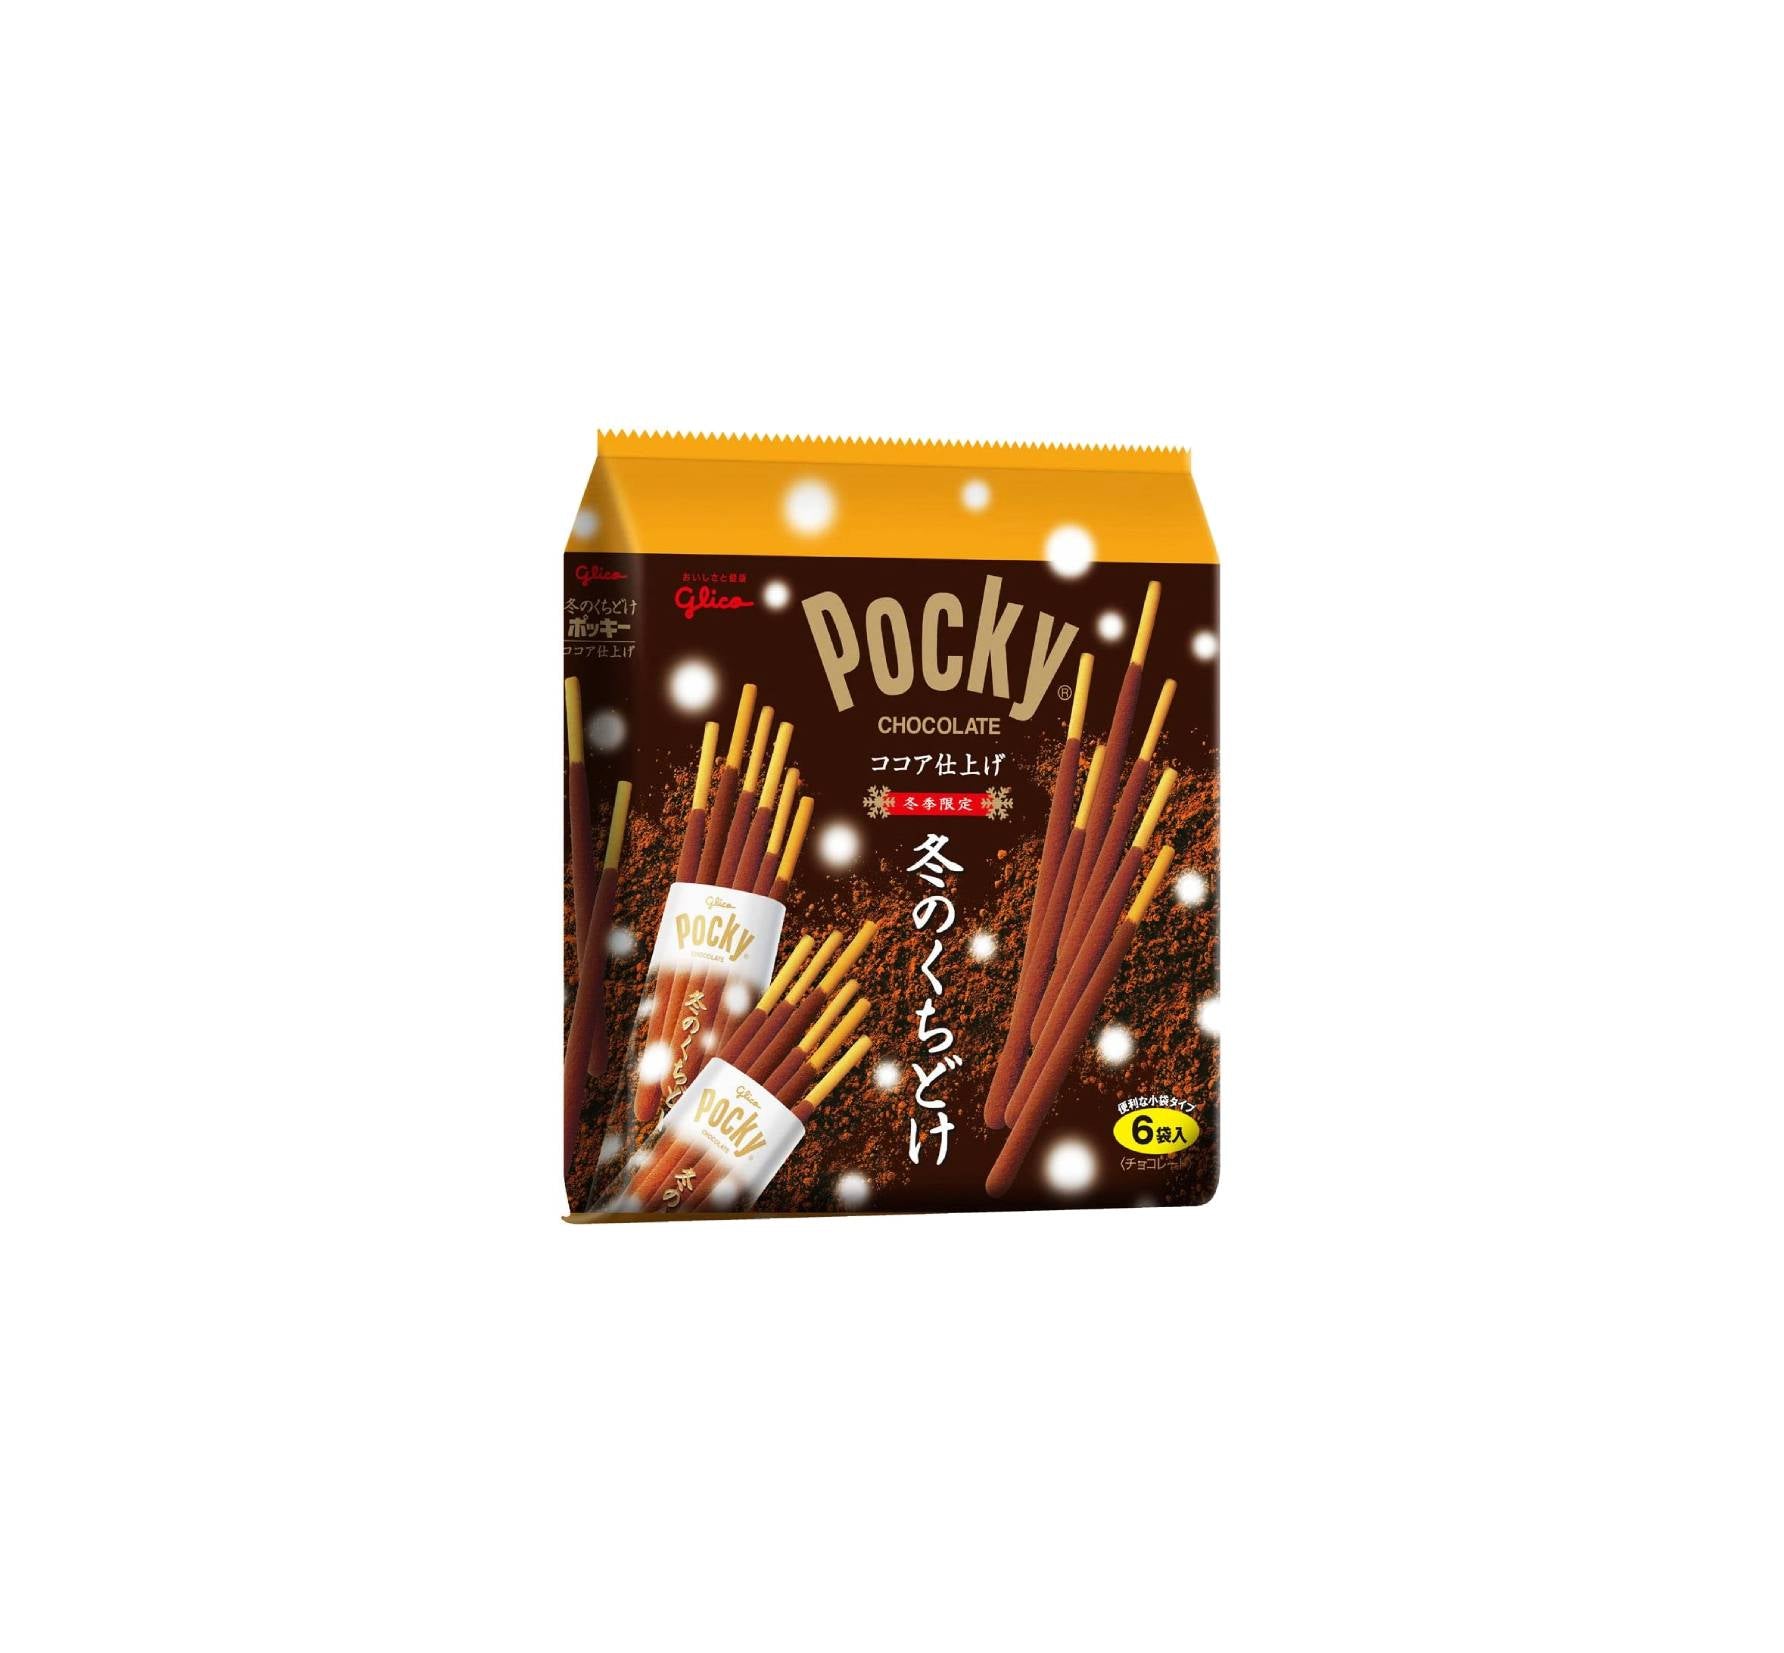 Pocky - Original Chocolate